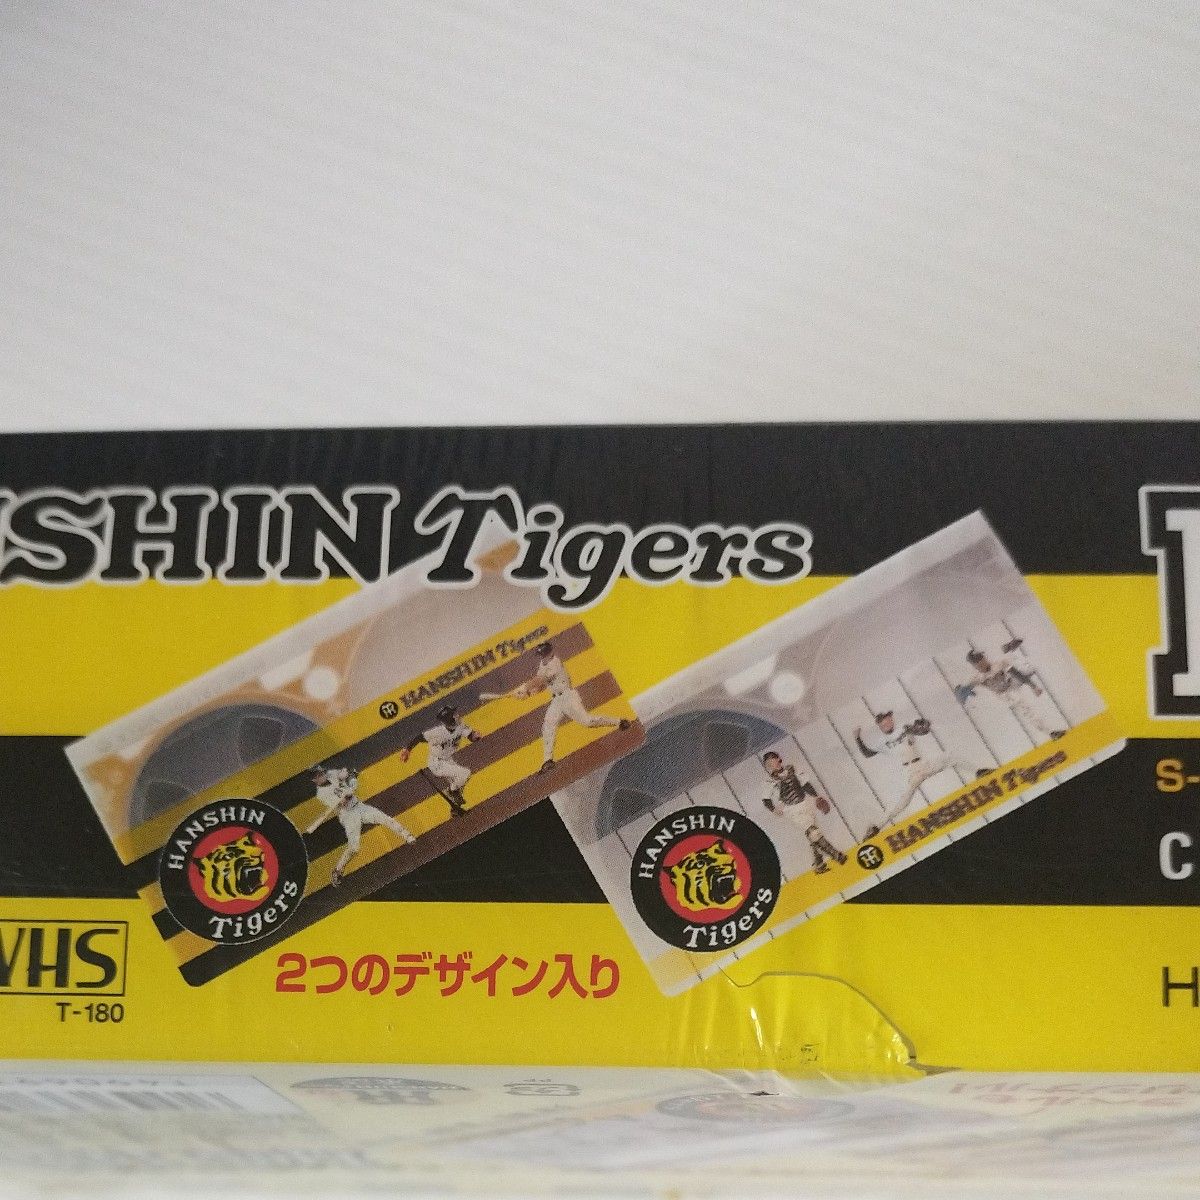 ビデオテープ 180分 阪神タイガース グラフィックカセット 限定版 スペシャルパック VHS